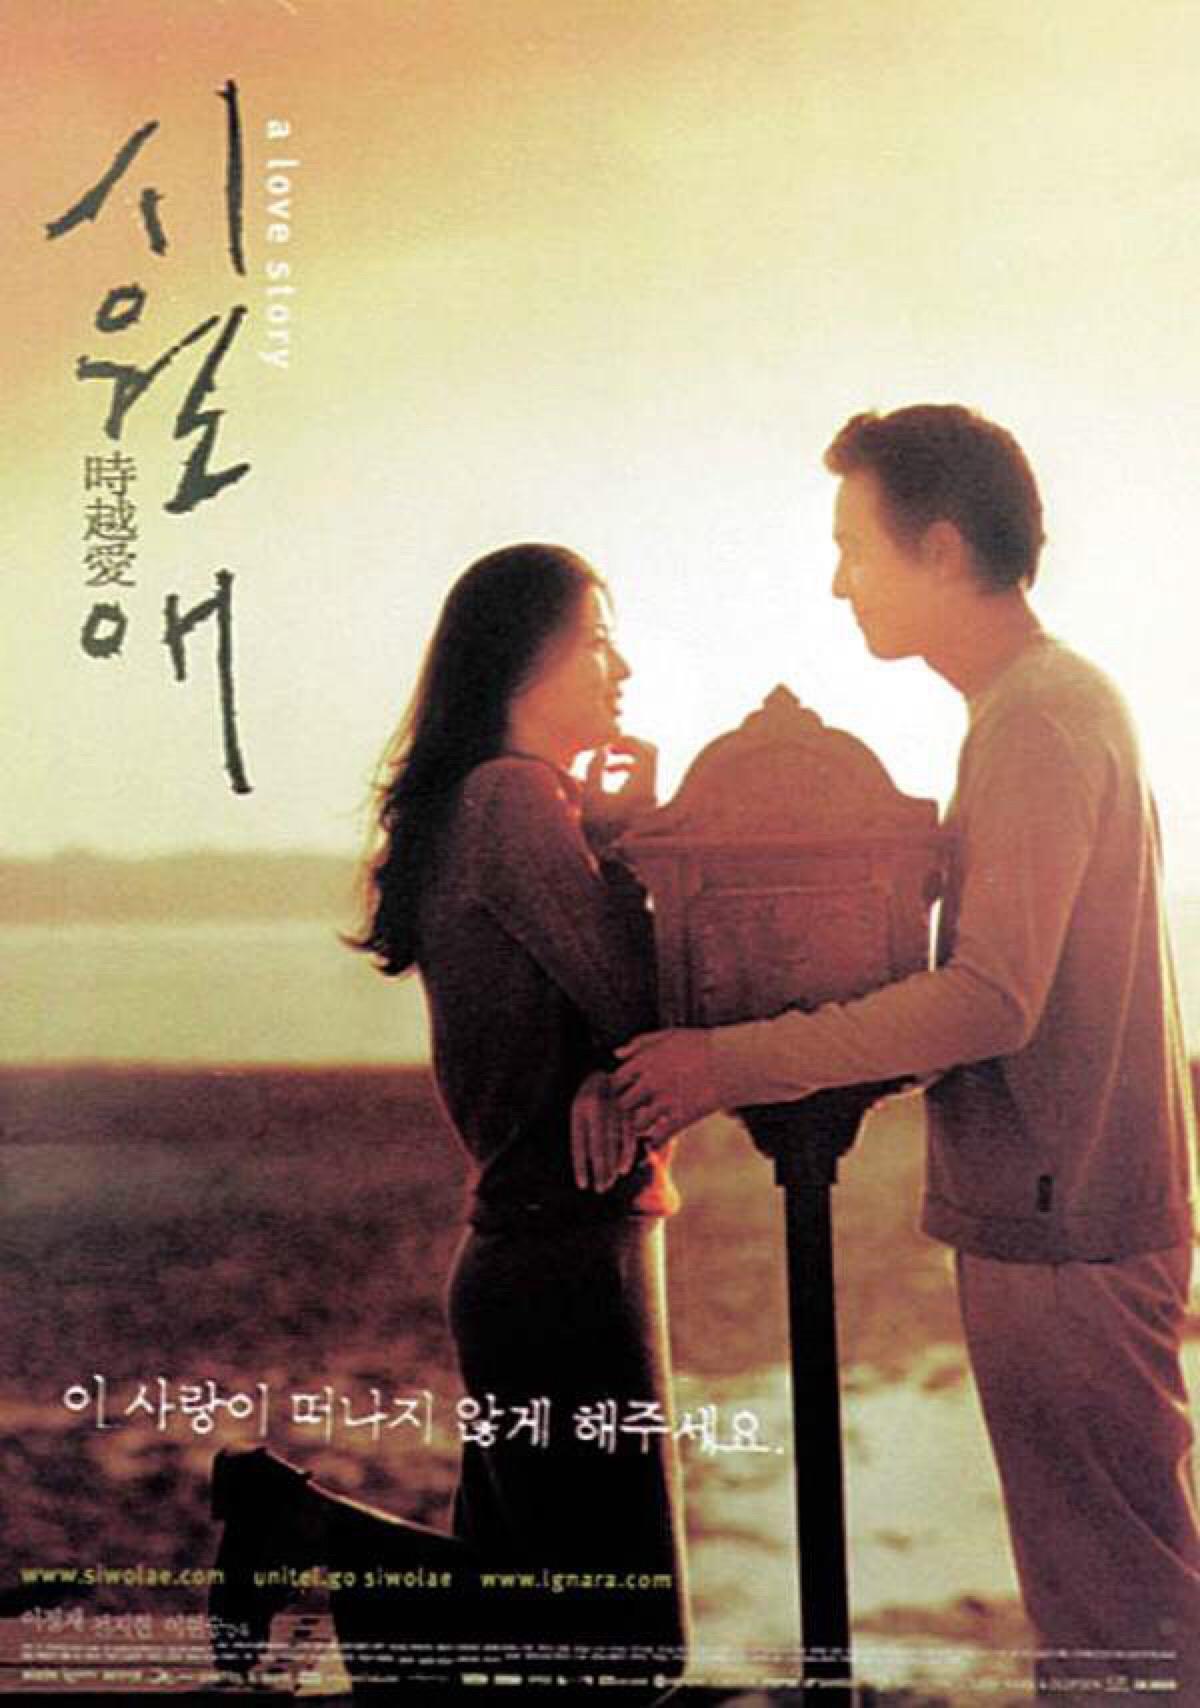 该片是2001年韩国釜山电影节参展作品,并获得意大利维罗纳电影节评审